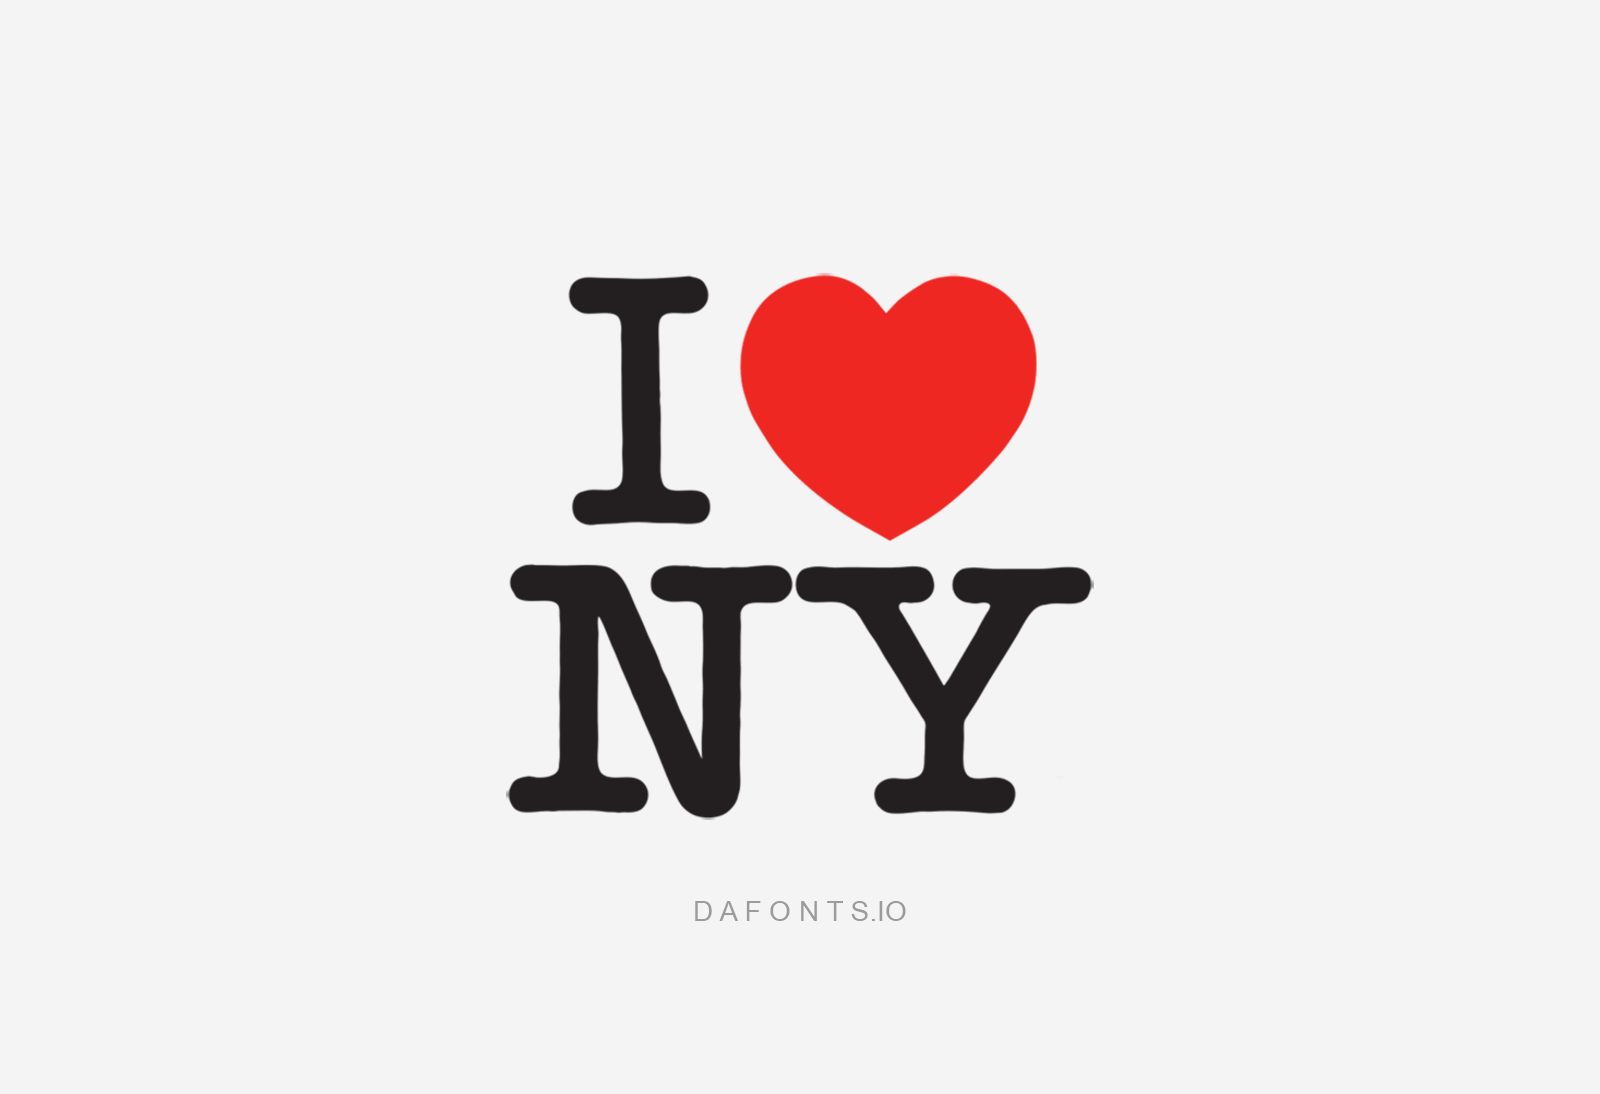 I Love NY Font